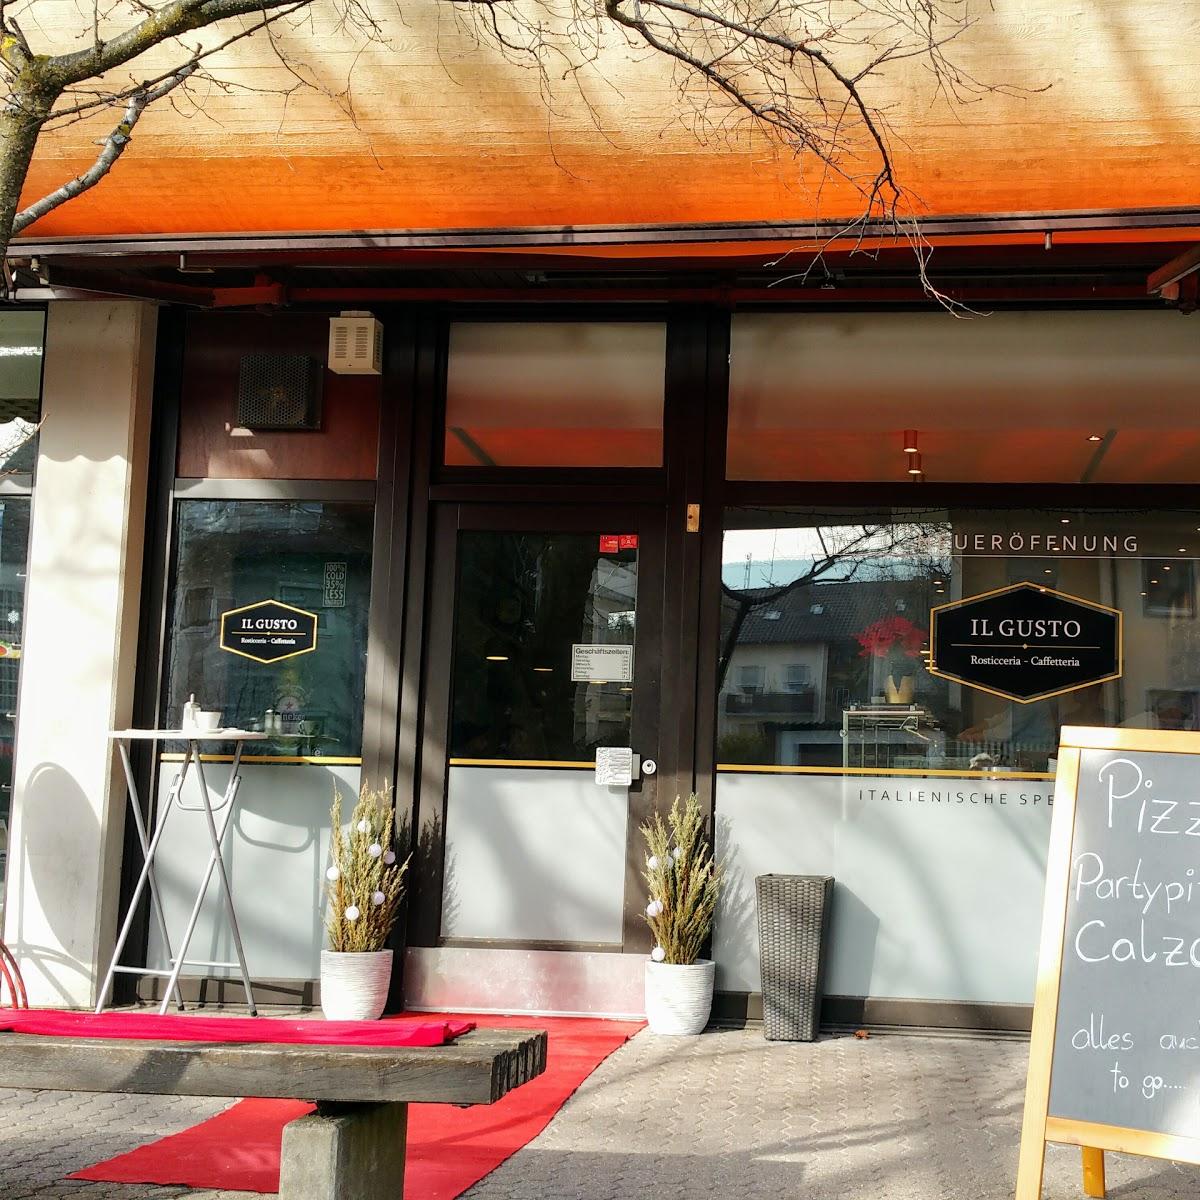 Restaurant "Il Gusto Cafe, Bar & Restaurant auch To Go" in Mössingen